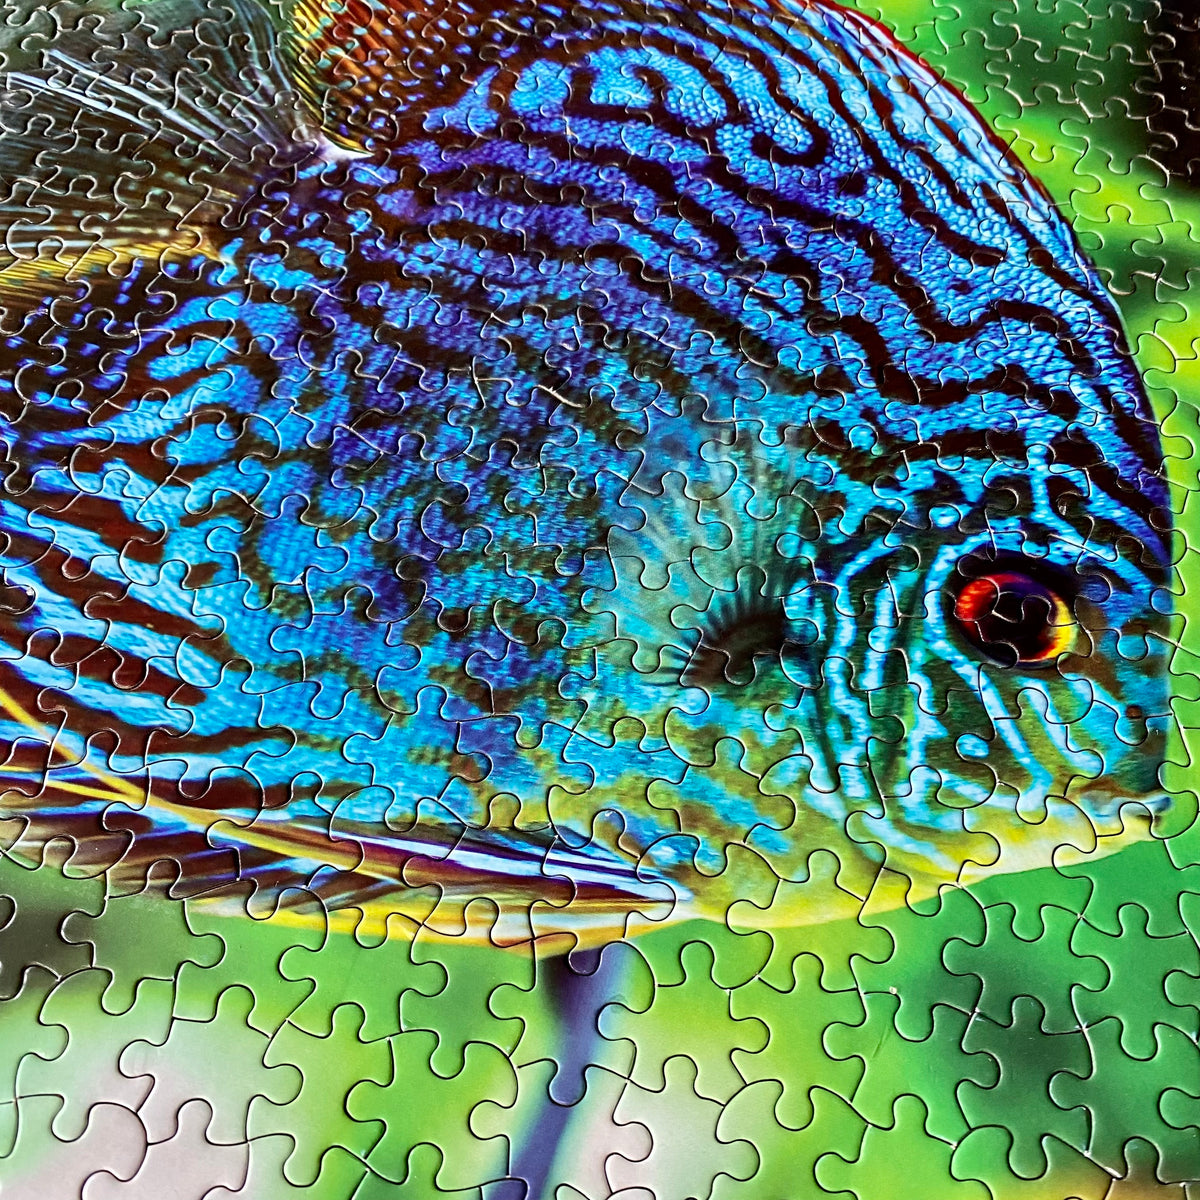 1000-Piece WetPlants Fish Puzzle